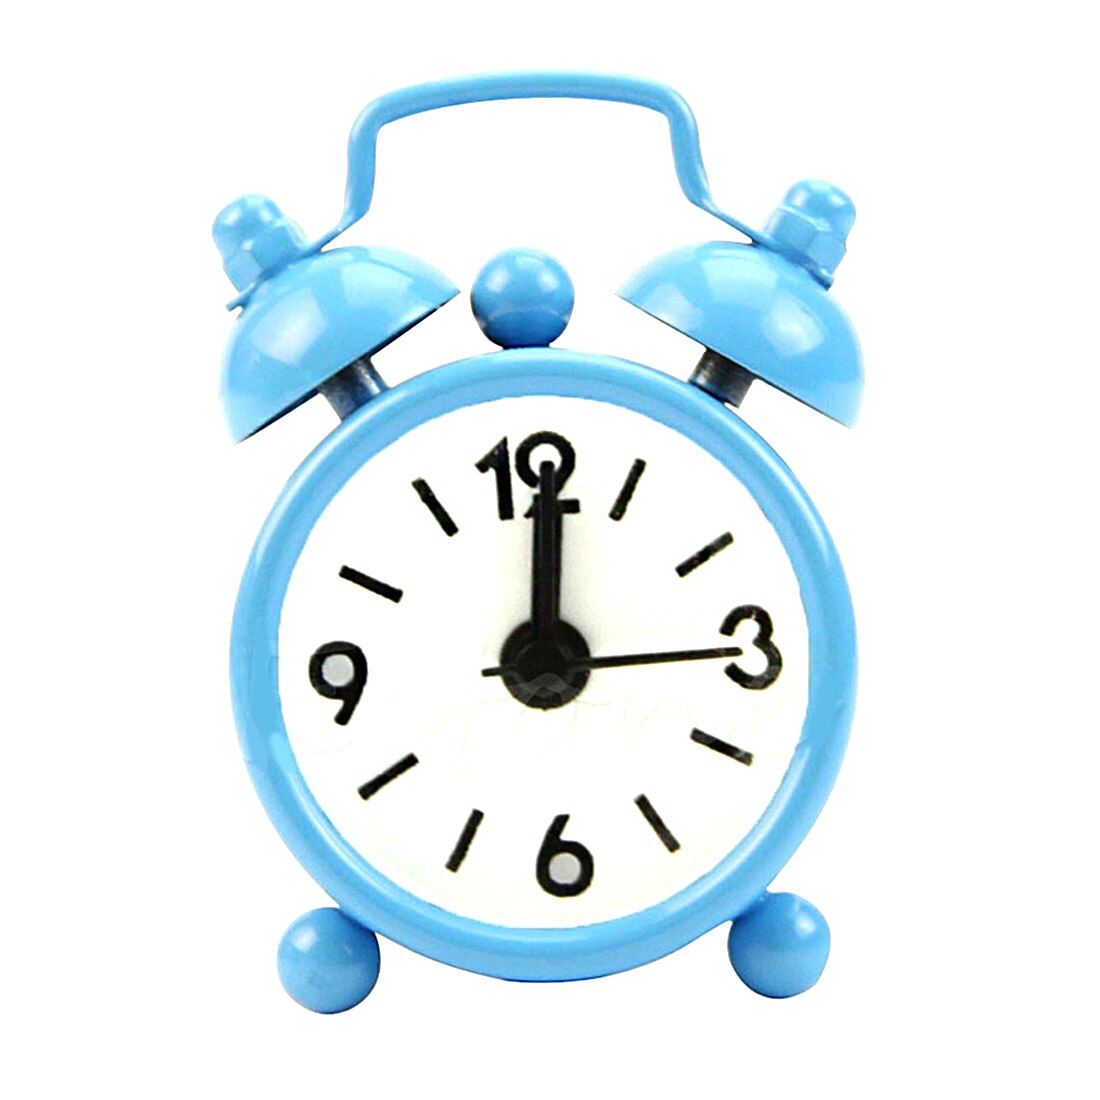 Di modo Nuova Casa Esterno Portatile Sveglio Bello Del Fumetto Quadrante Numero Tondo Desk Alarm Clock Mini: Blu